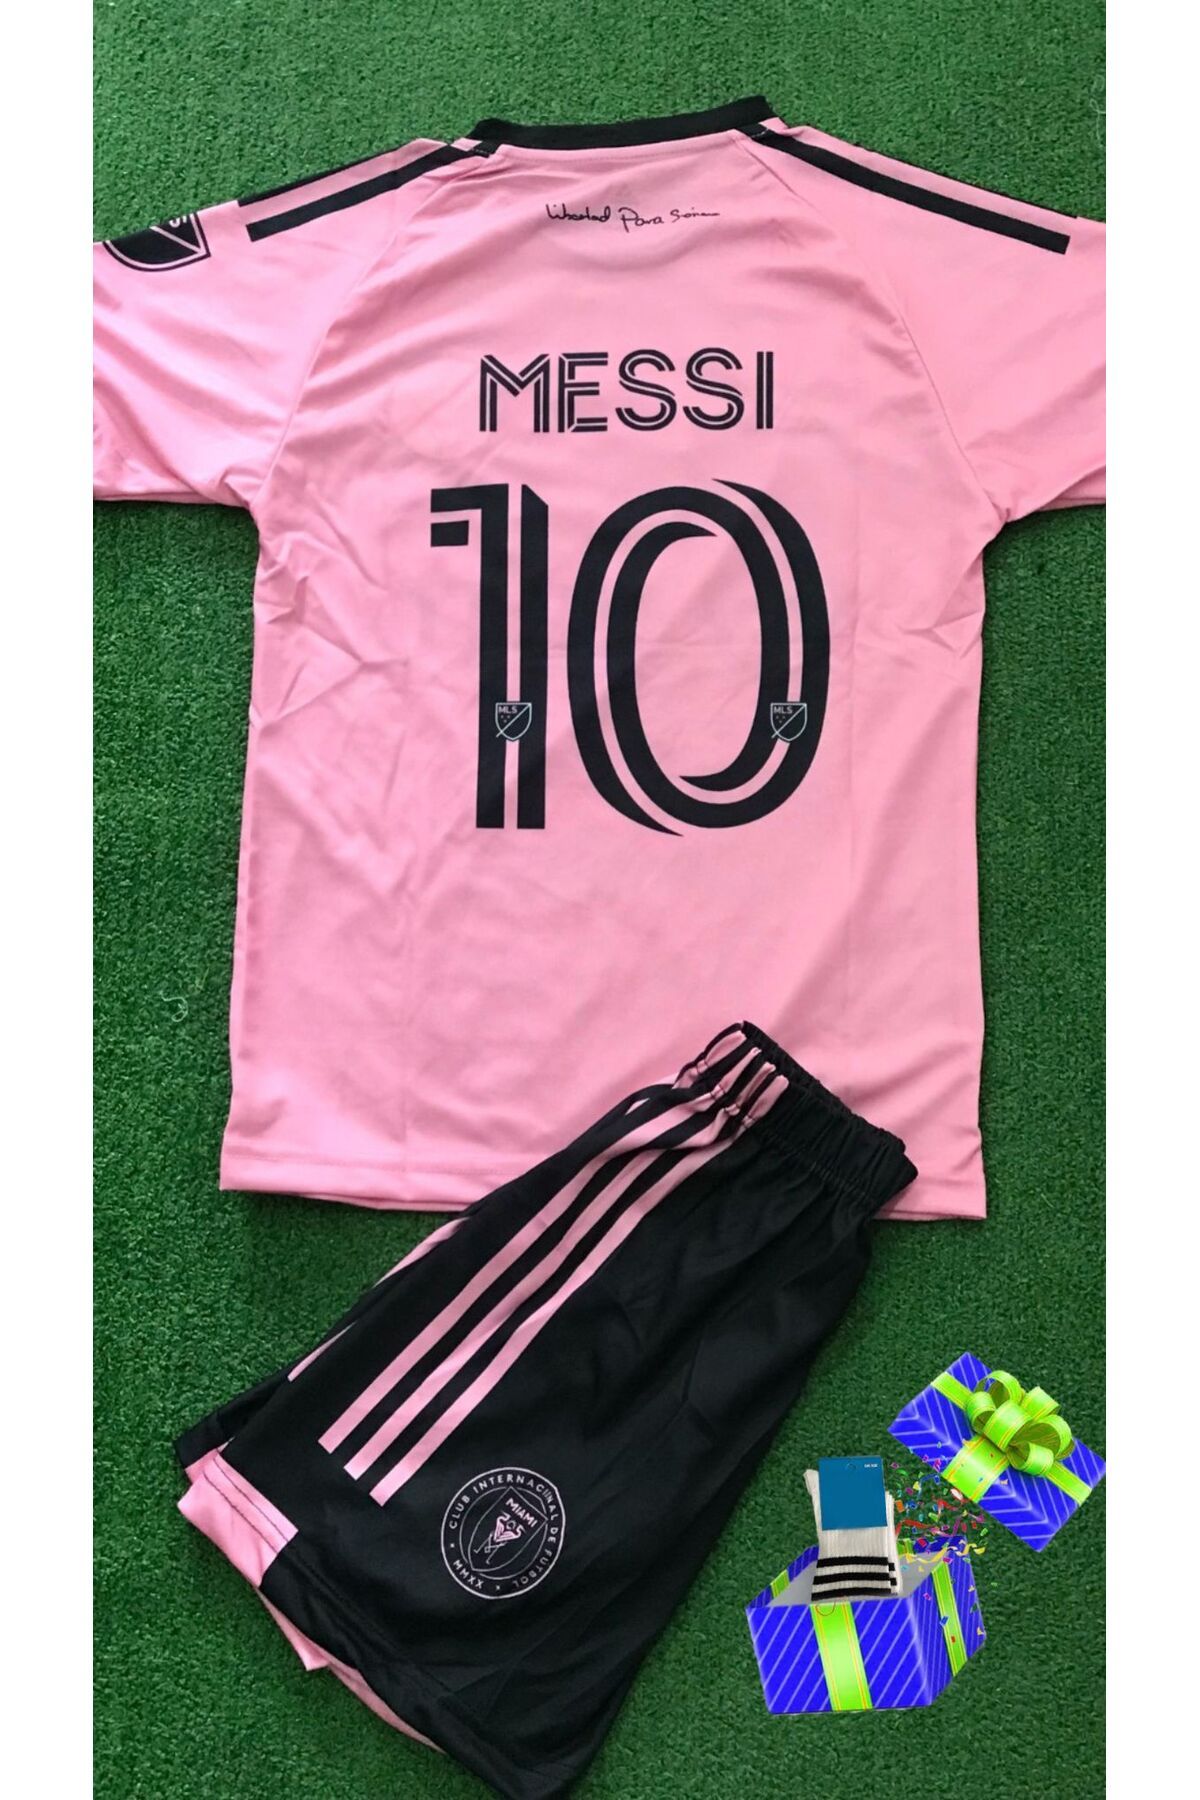 İeys Sport Çorap Hediyeli Messi Inter Miami 23/24 Sezon Çocuk Forma Şort Çorap Takımı - 3'lü Set